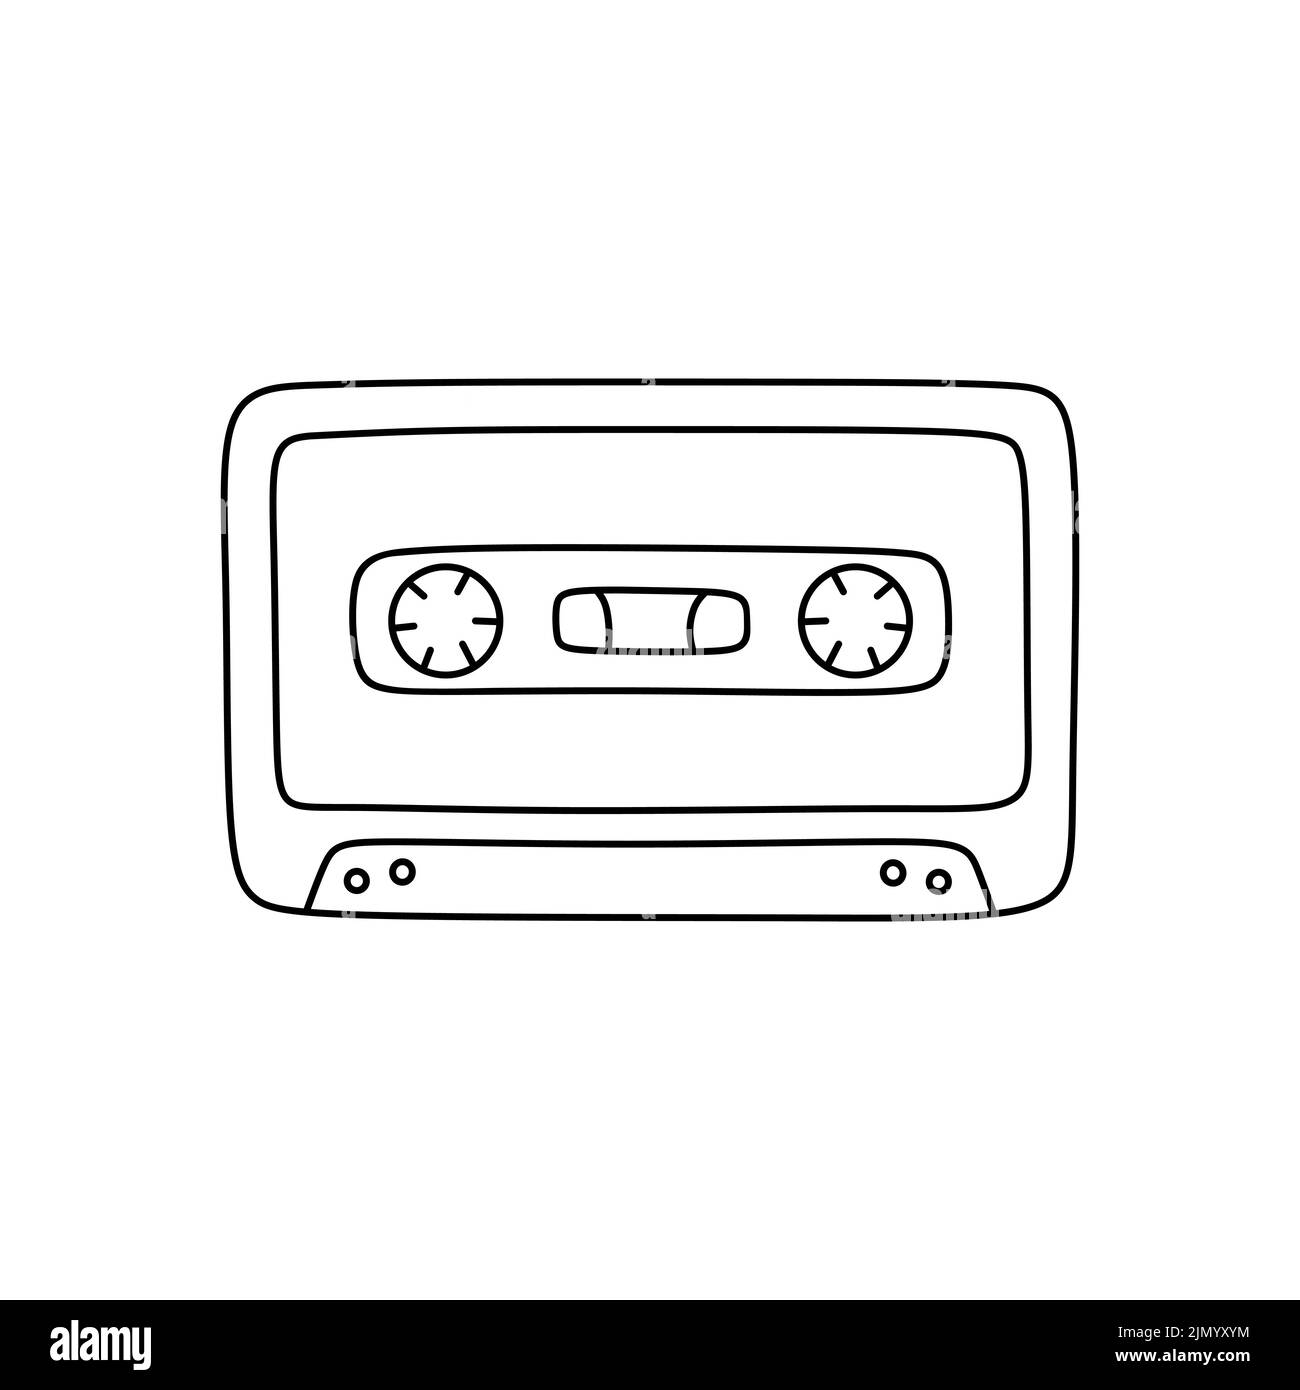 Mixtape Rétro Vintage Cassette Audio De Style Rétro Mix Tape Est